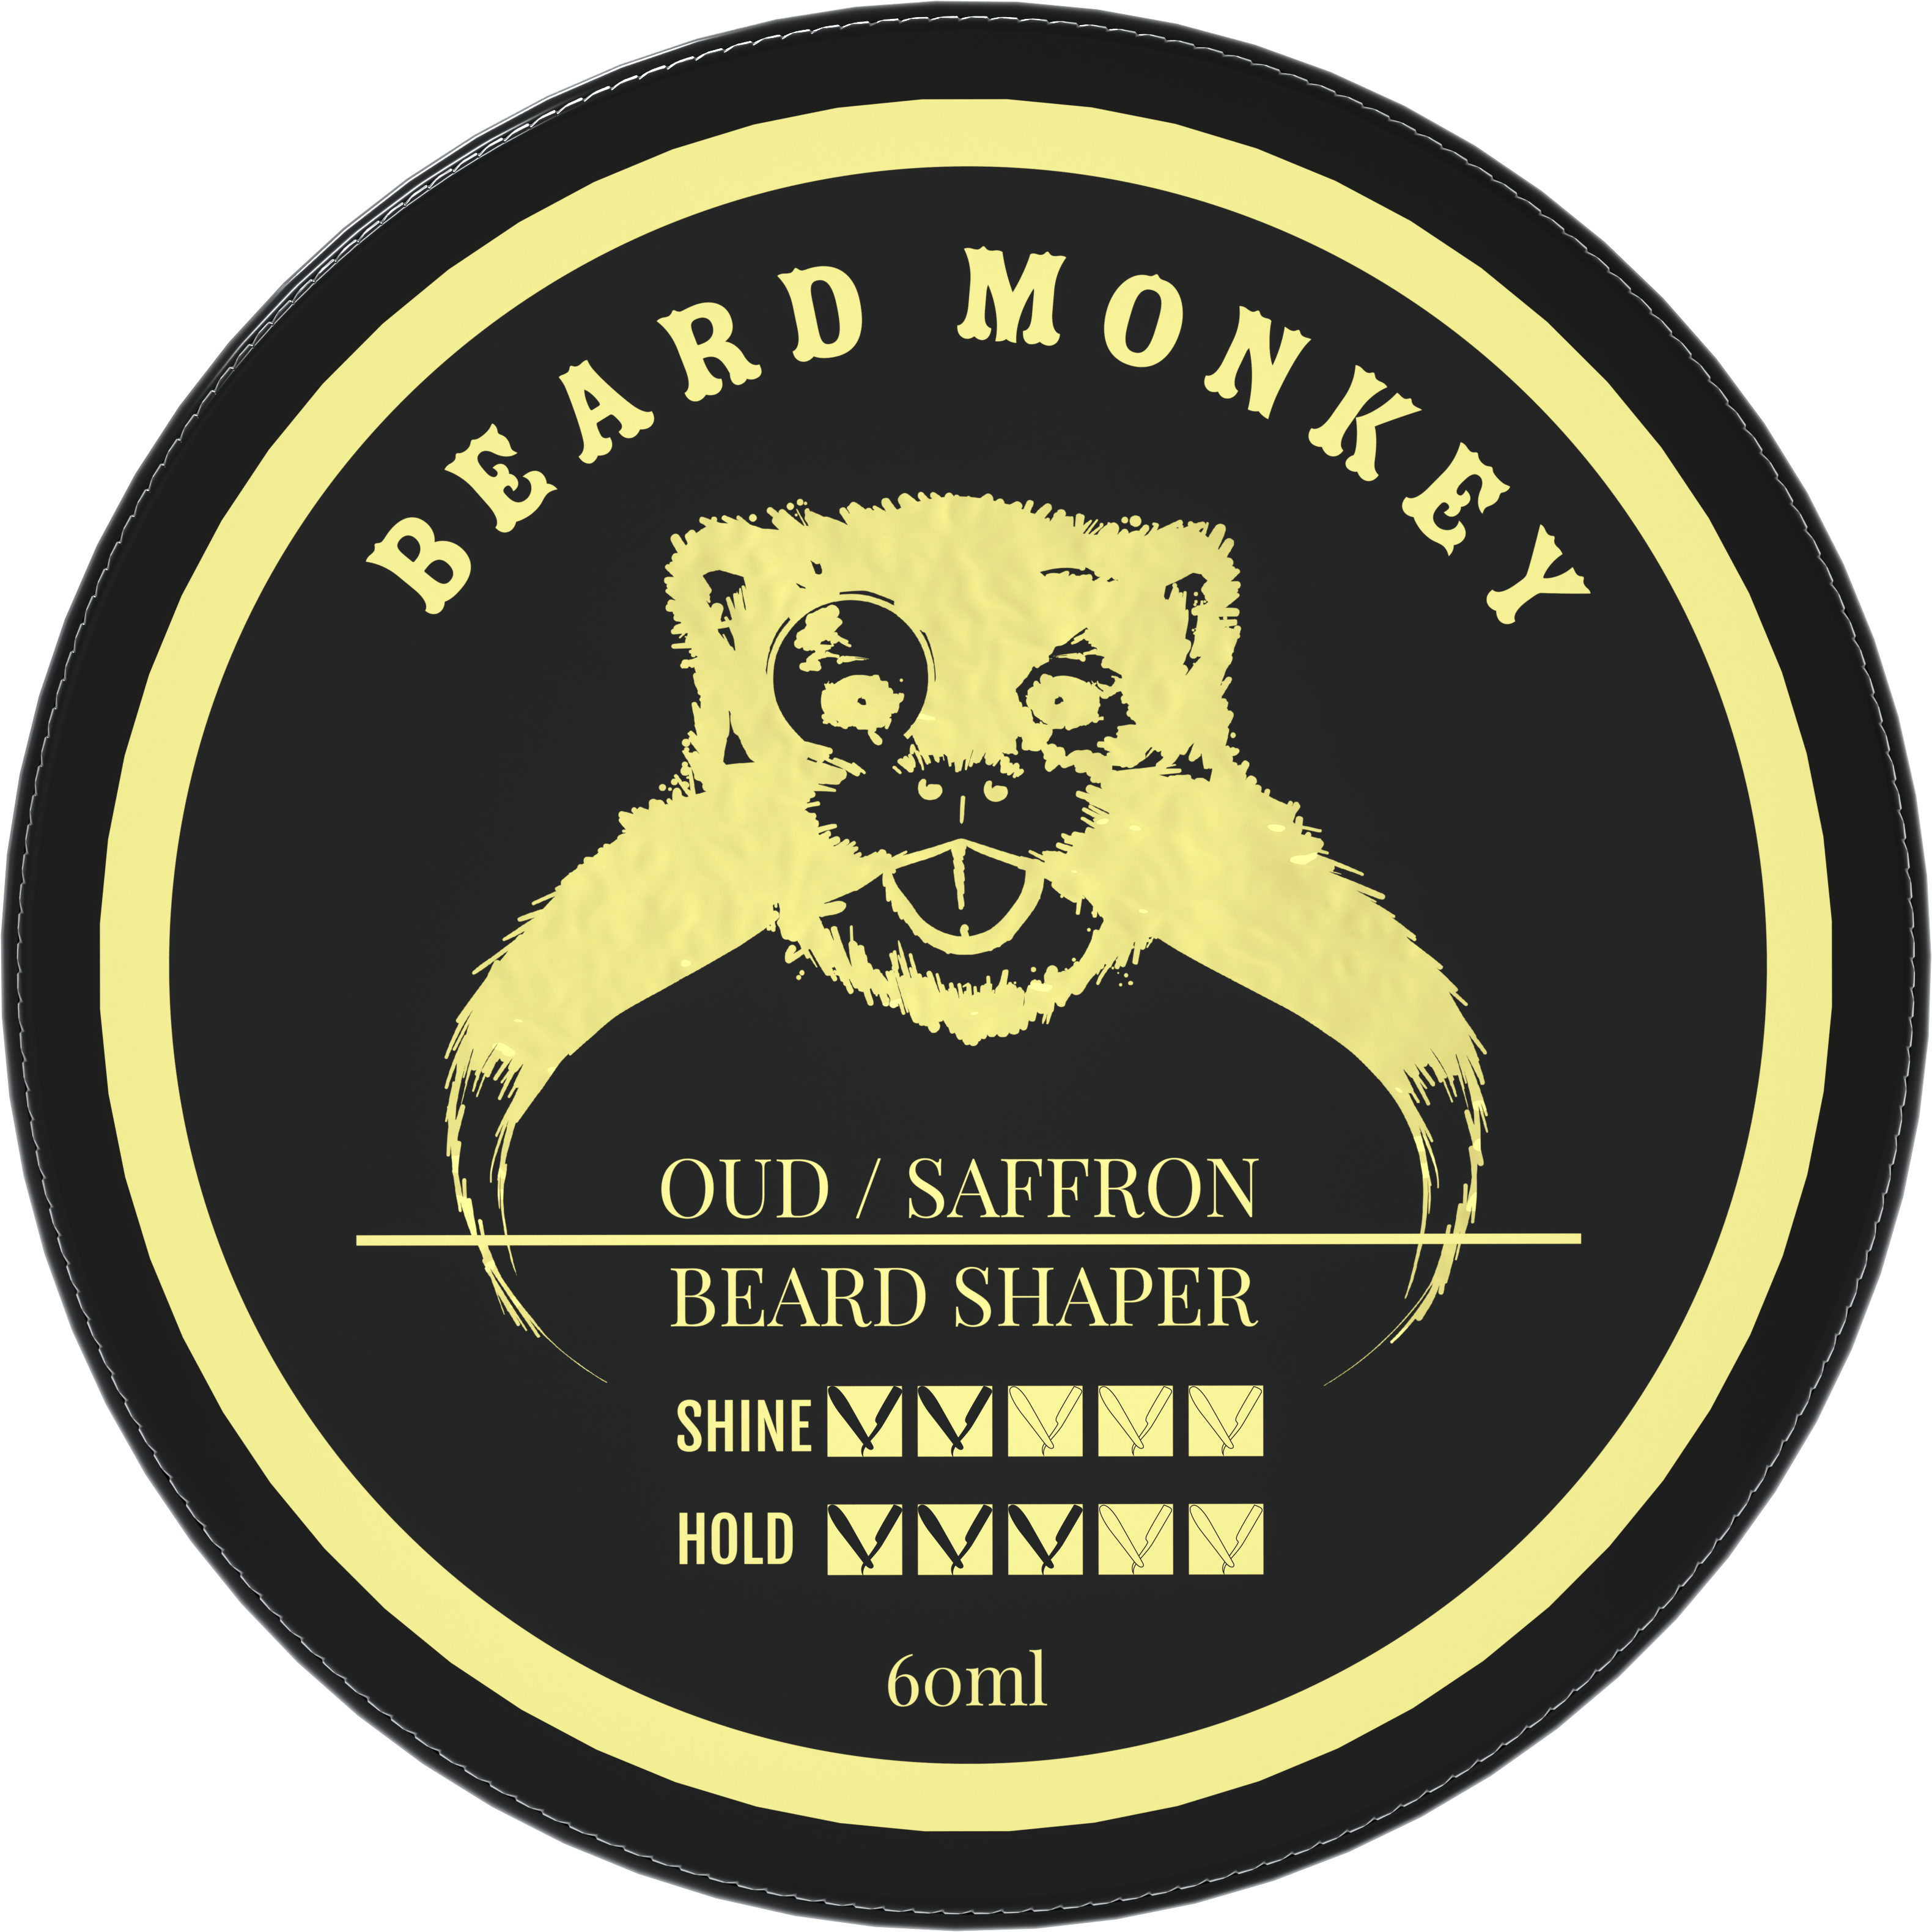 Bilde av Beard Monkey Monkey Oud / Saffron - Beard Shaper 60 Ml